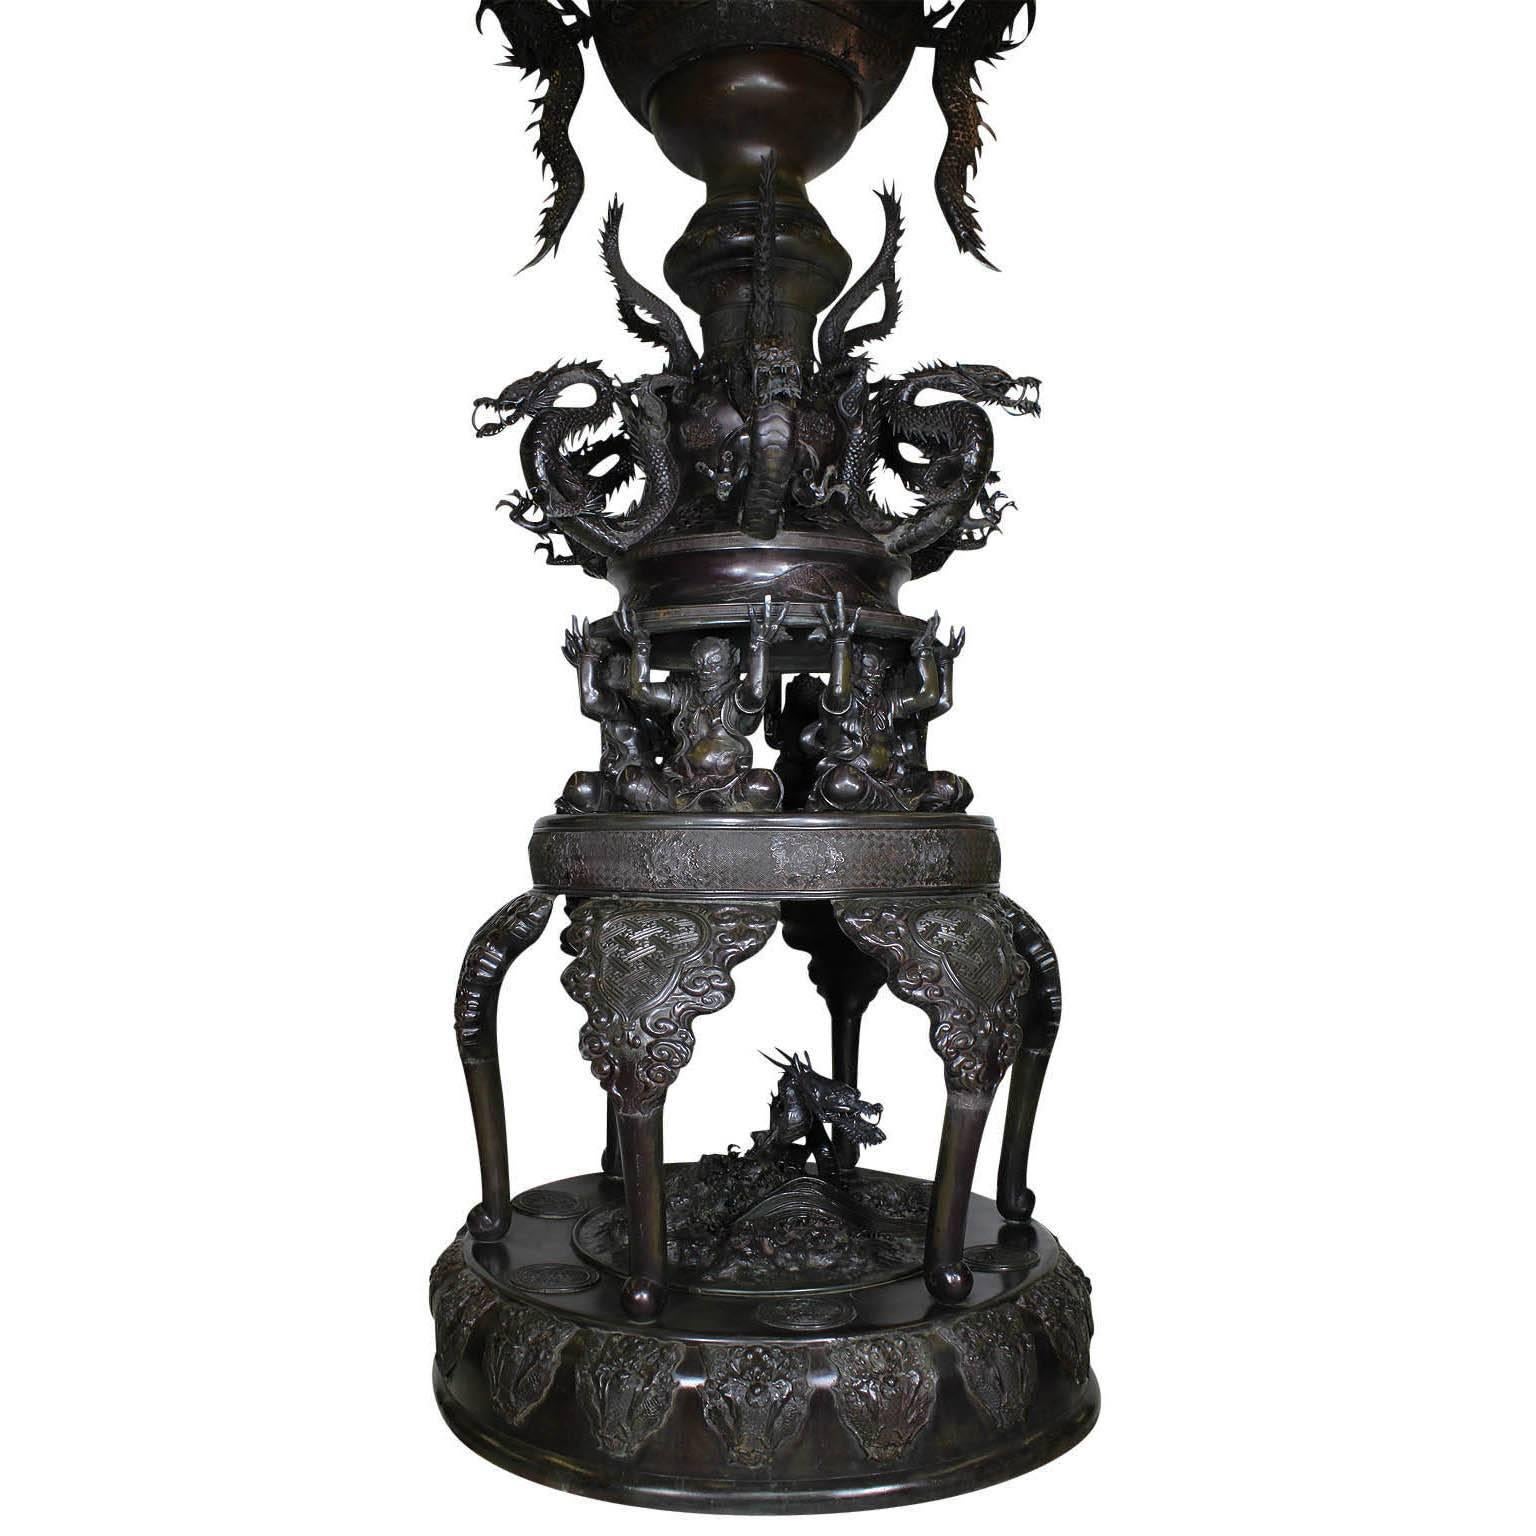 Monumentale japanische Bronze-Urne aus der Meiji-Periode, aufwändiges, mehrteiliges Ausstellungsstück mit großen, hochreliefierten Drachen-'Henkeln' zu beiden Seiten des eiförmigen Körpers mit zwei geformten Reserven einer auf einem Drachen oder